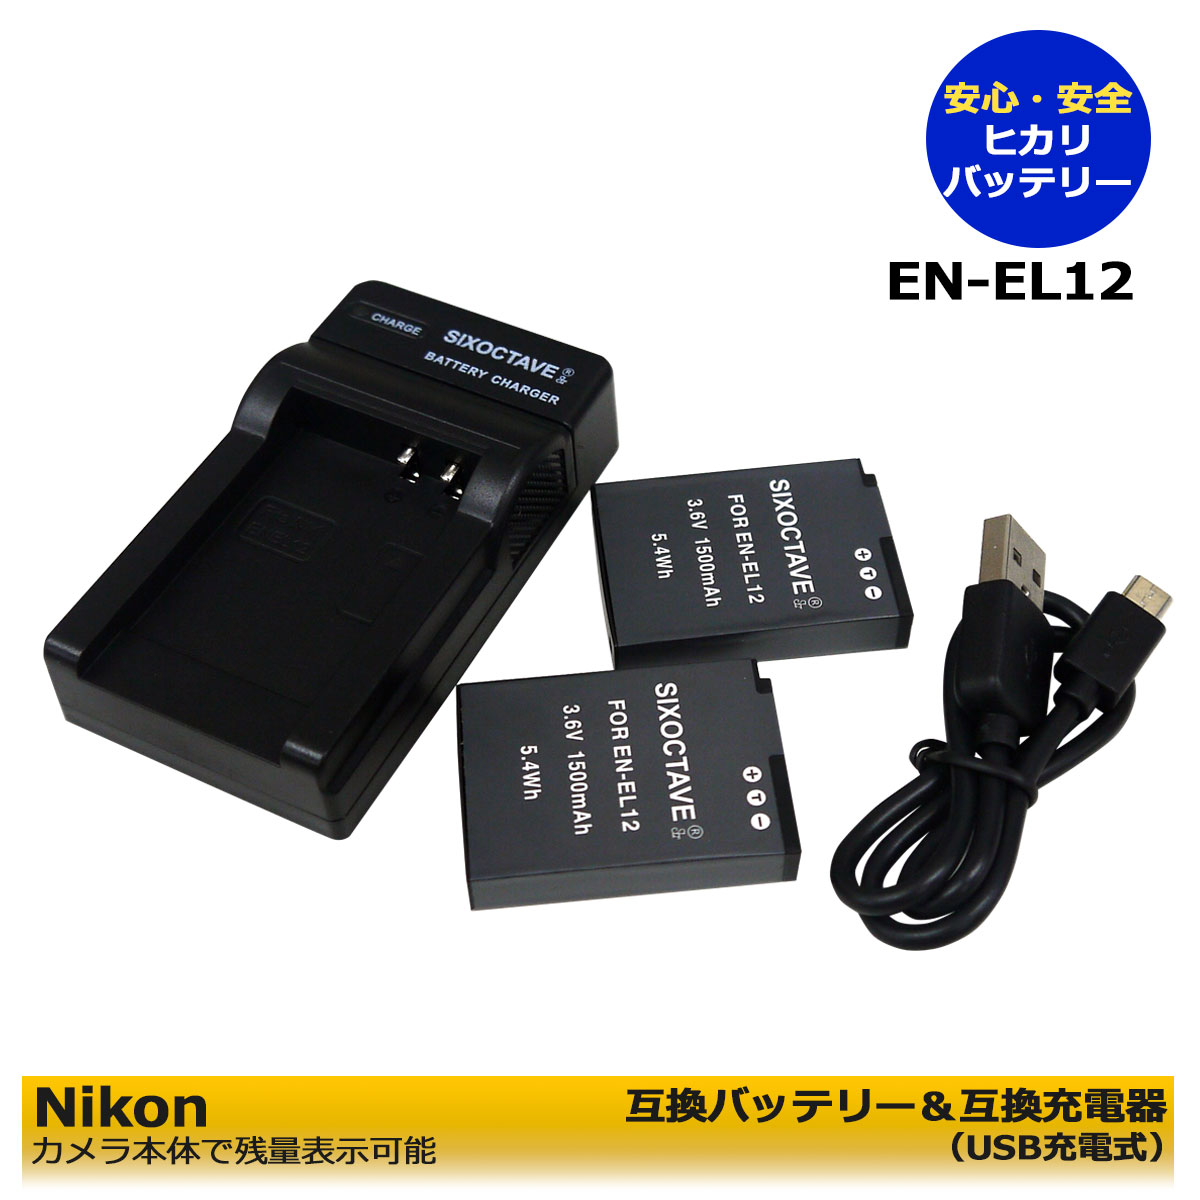 NIKONEN-EL12 ̵ ߴӡ2ĤȡߴUSBŴΡ3åȡ˥Coolpix P340 / Coolpix A900 / Coolpix W300 / Coolpix A1000 / Coolpix B600 / KeyMission 170 / KeyMis...